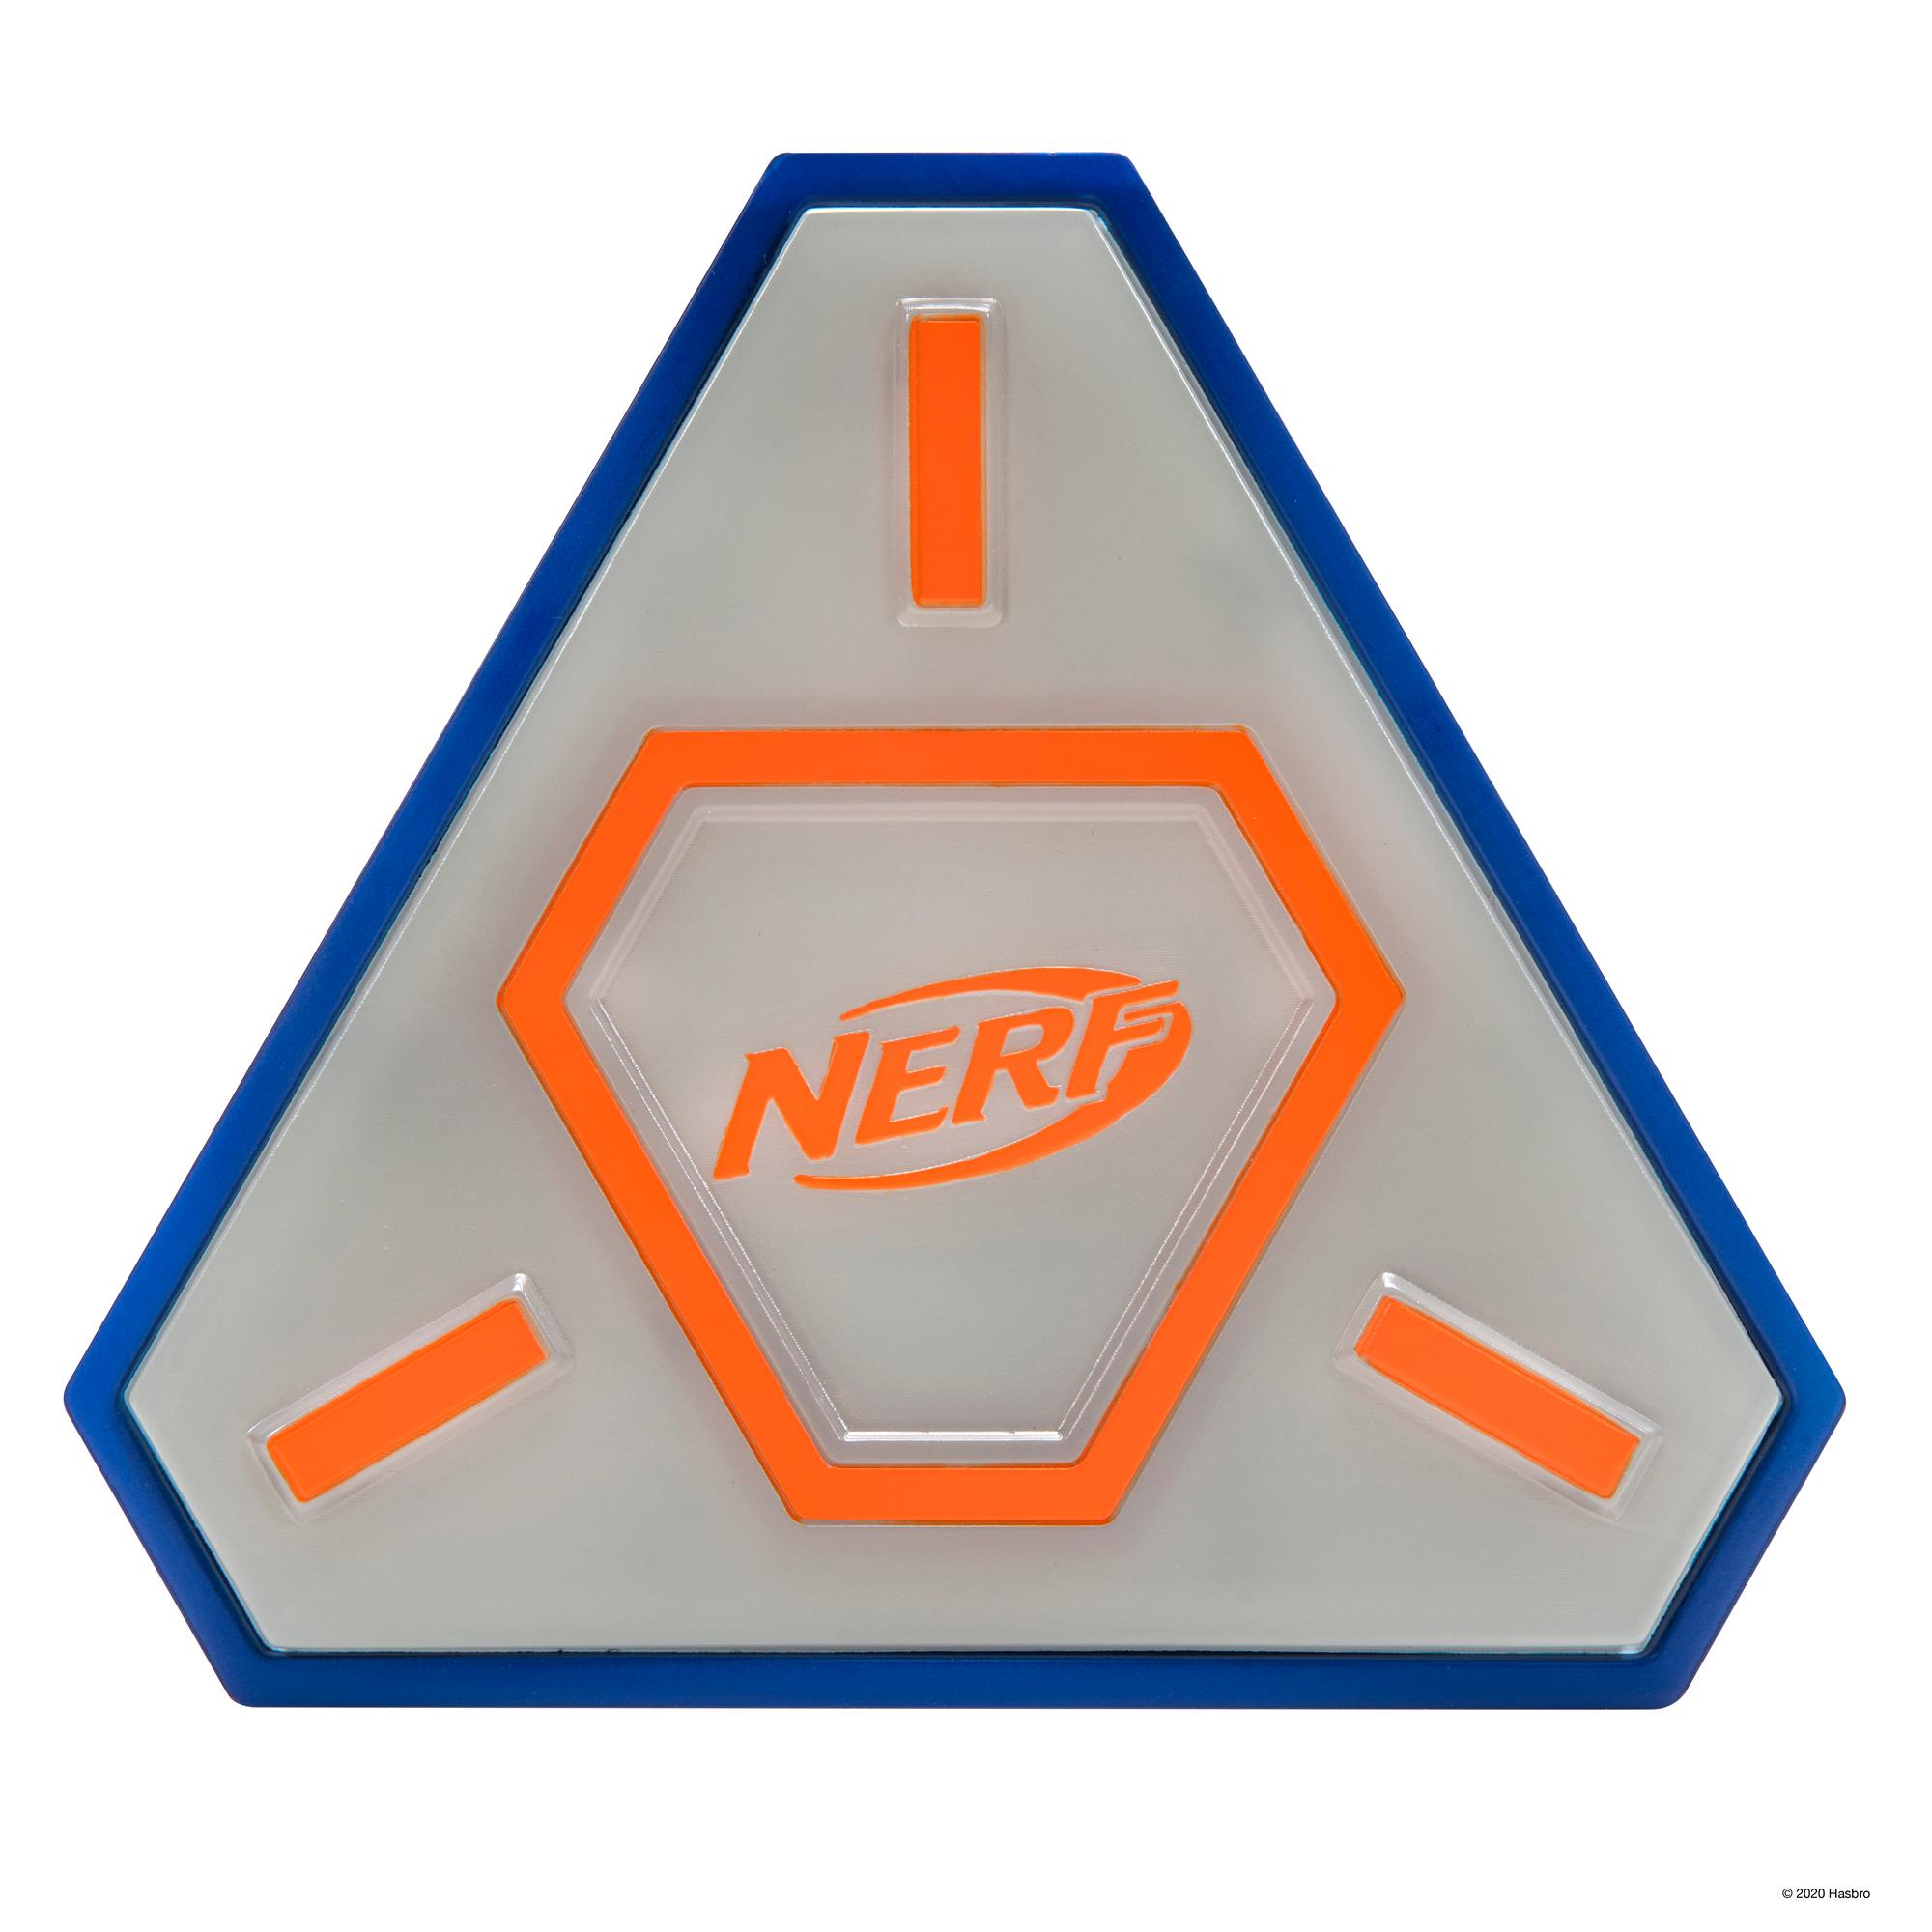 Nerf Flash Strike Target